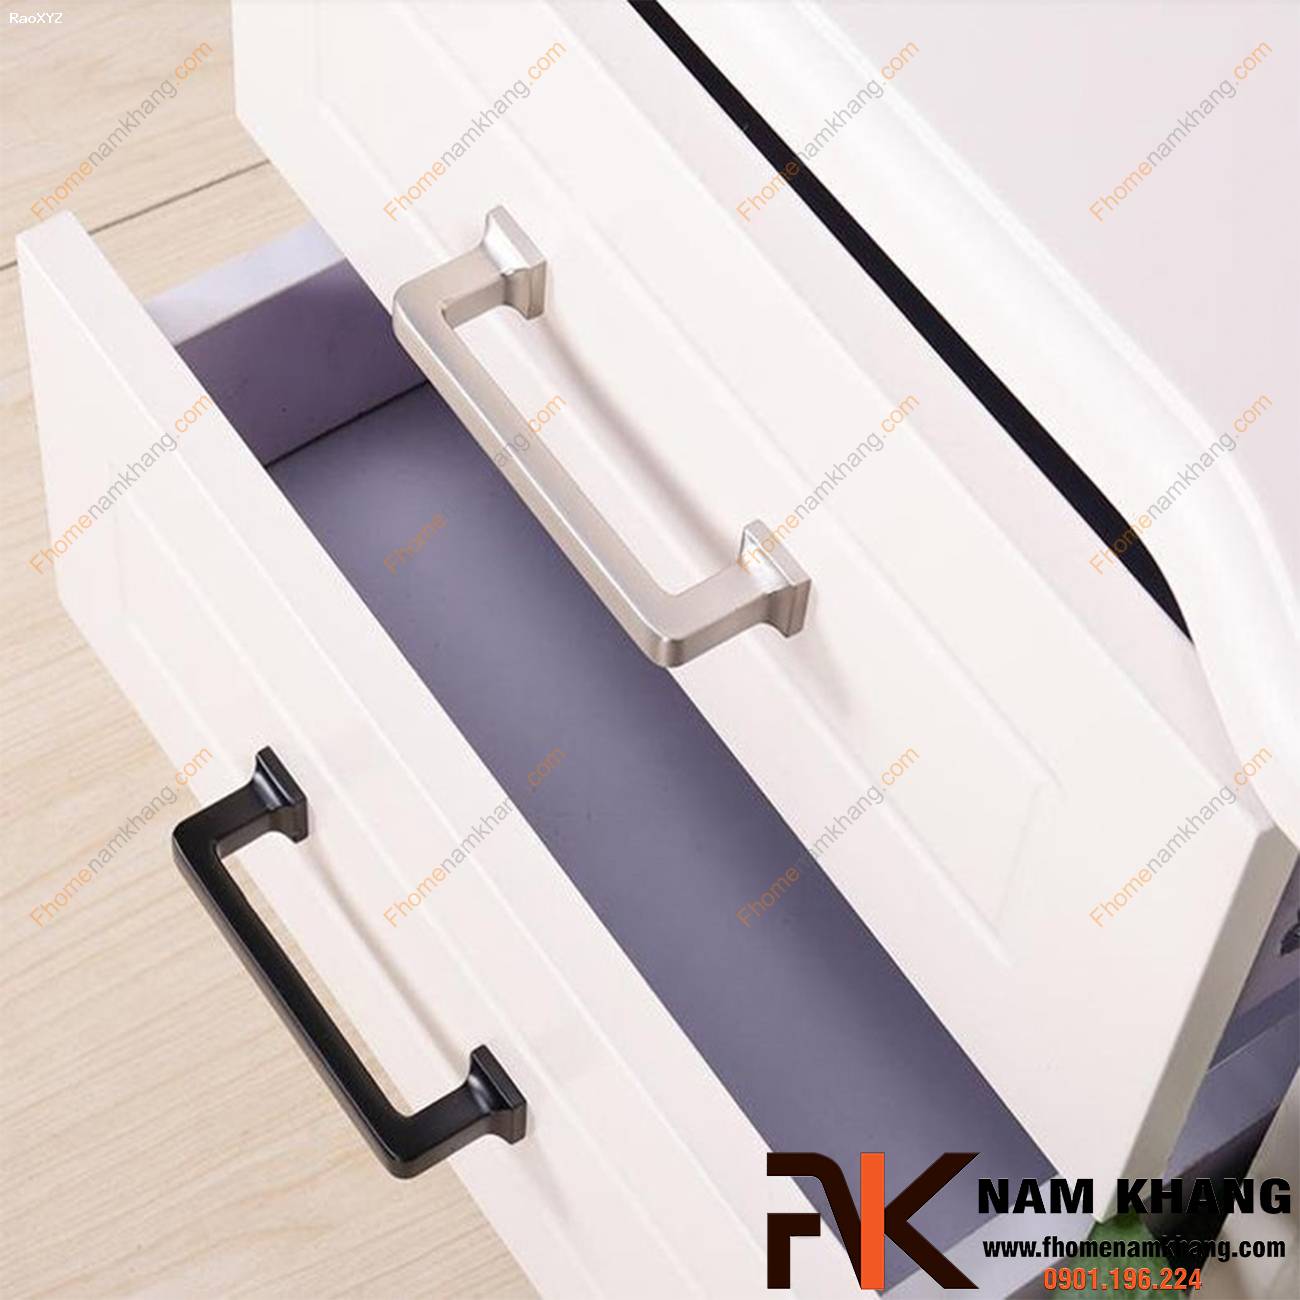 Tay nắm tủ cao cấp dạng thanh chữ nhật NK404 | F-Home NamKhang